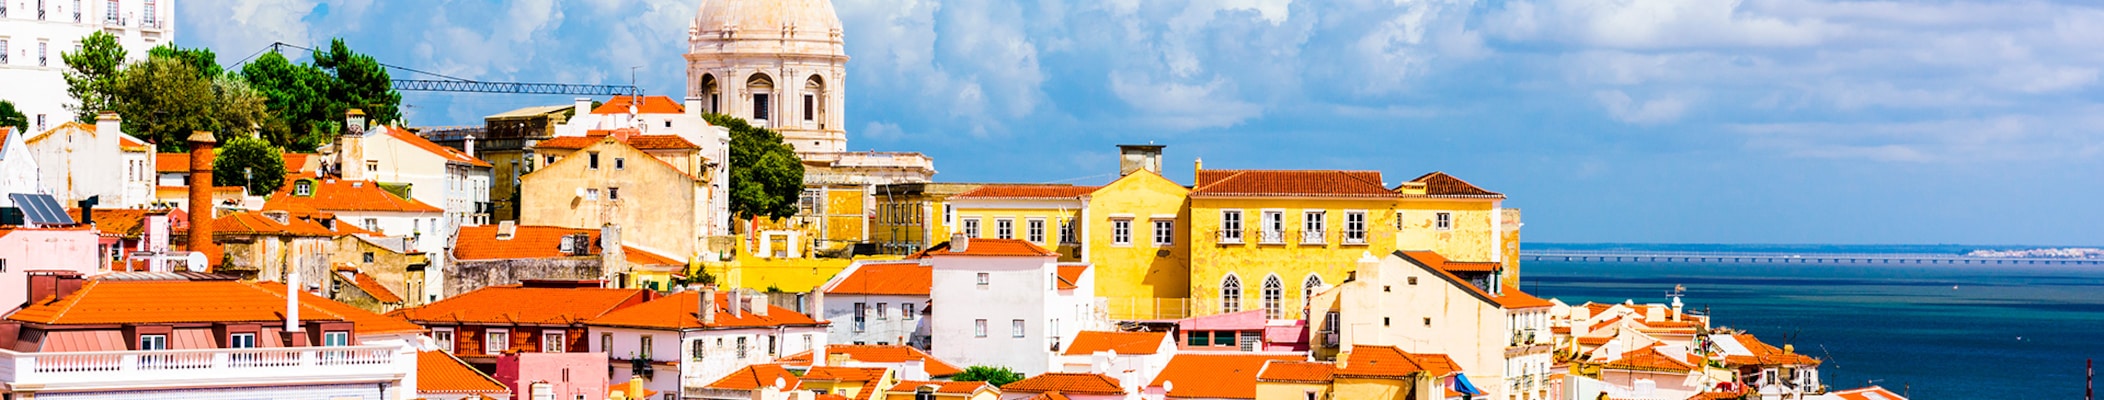 Lisboa com excursão